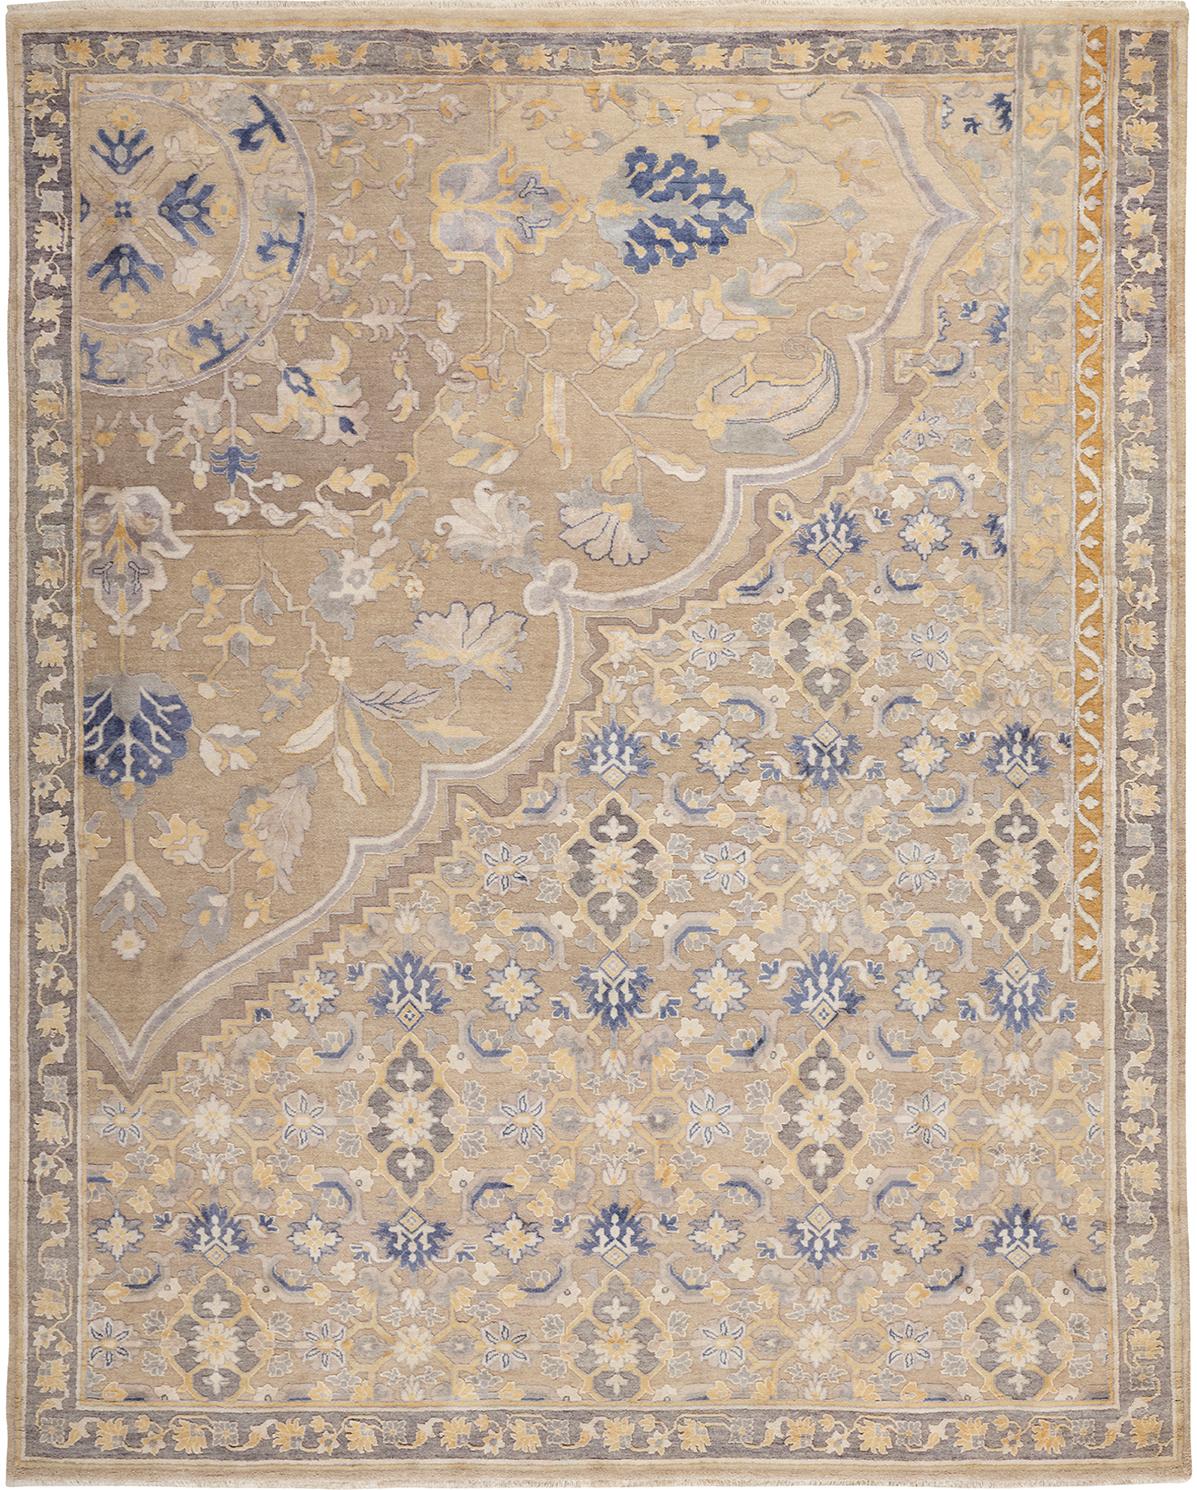 Bien qu'ils aient été tissés à l'origine par les nomades bakhtiari, la plupart des tapis bakhtiari authentiques sont tissés dans les pays de l'Union européenne.
Les communautés bakhtiari se sont installées dans le centre-ouest de l'Iran. Les motifs